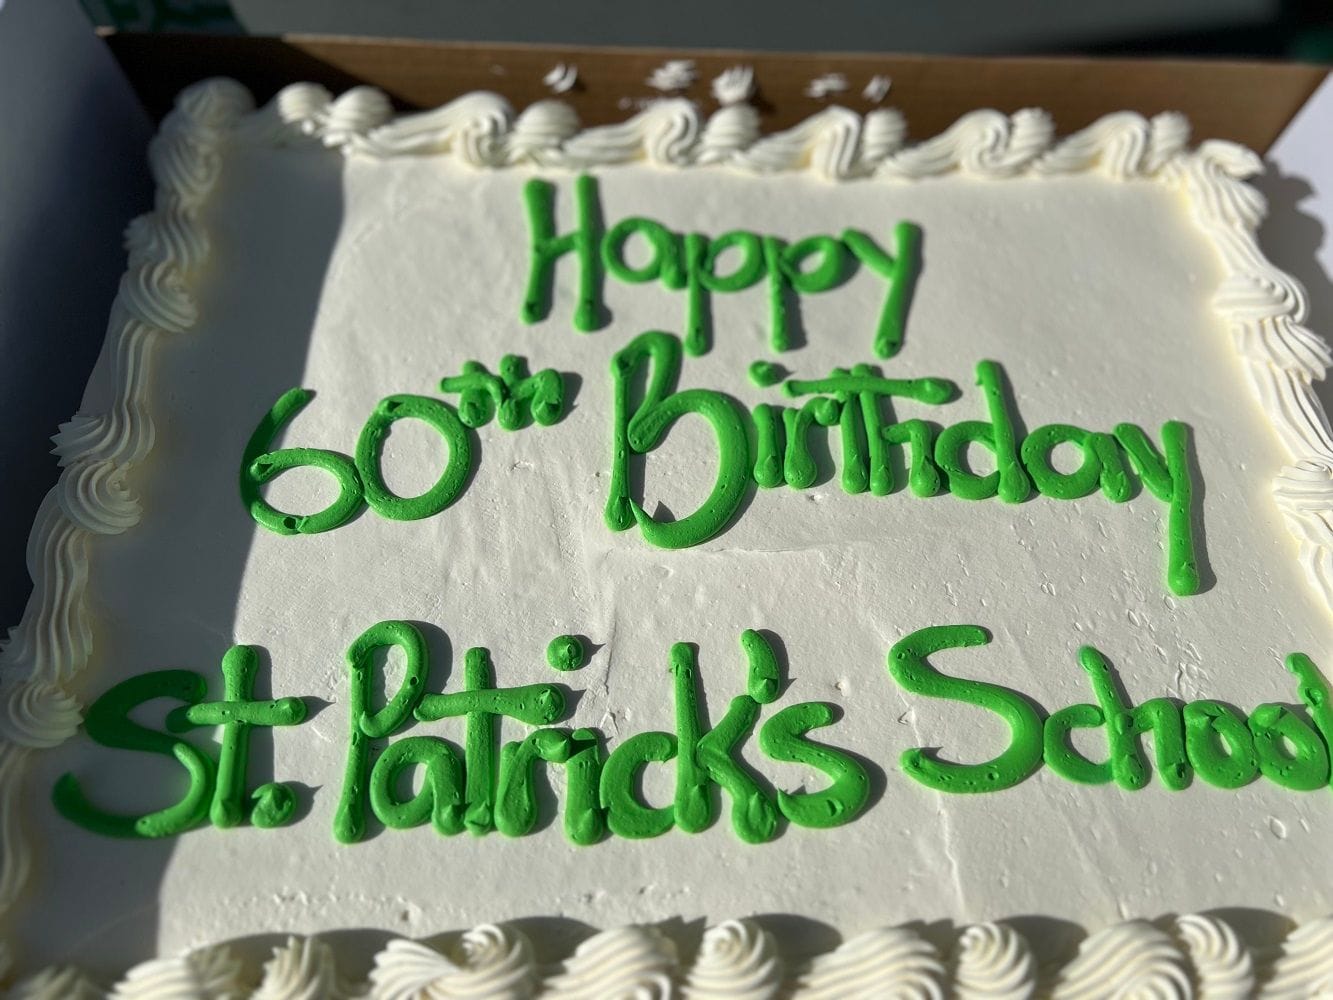 St Patrick's 60th Birthday Celebration